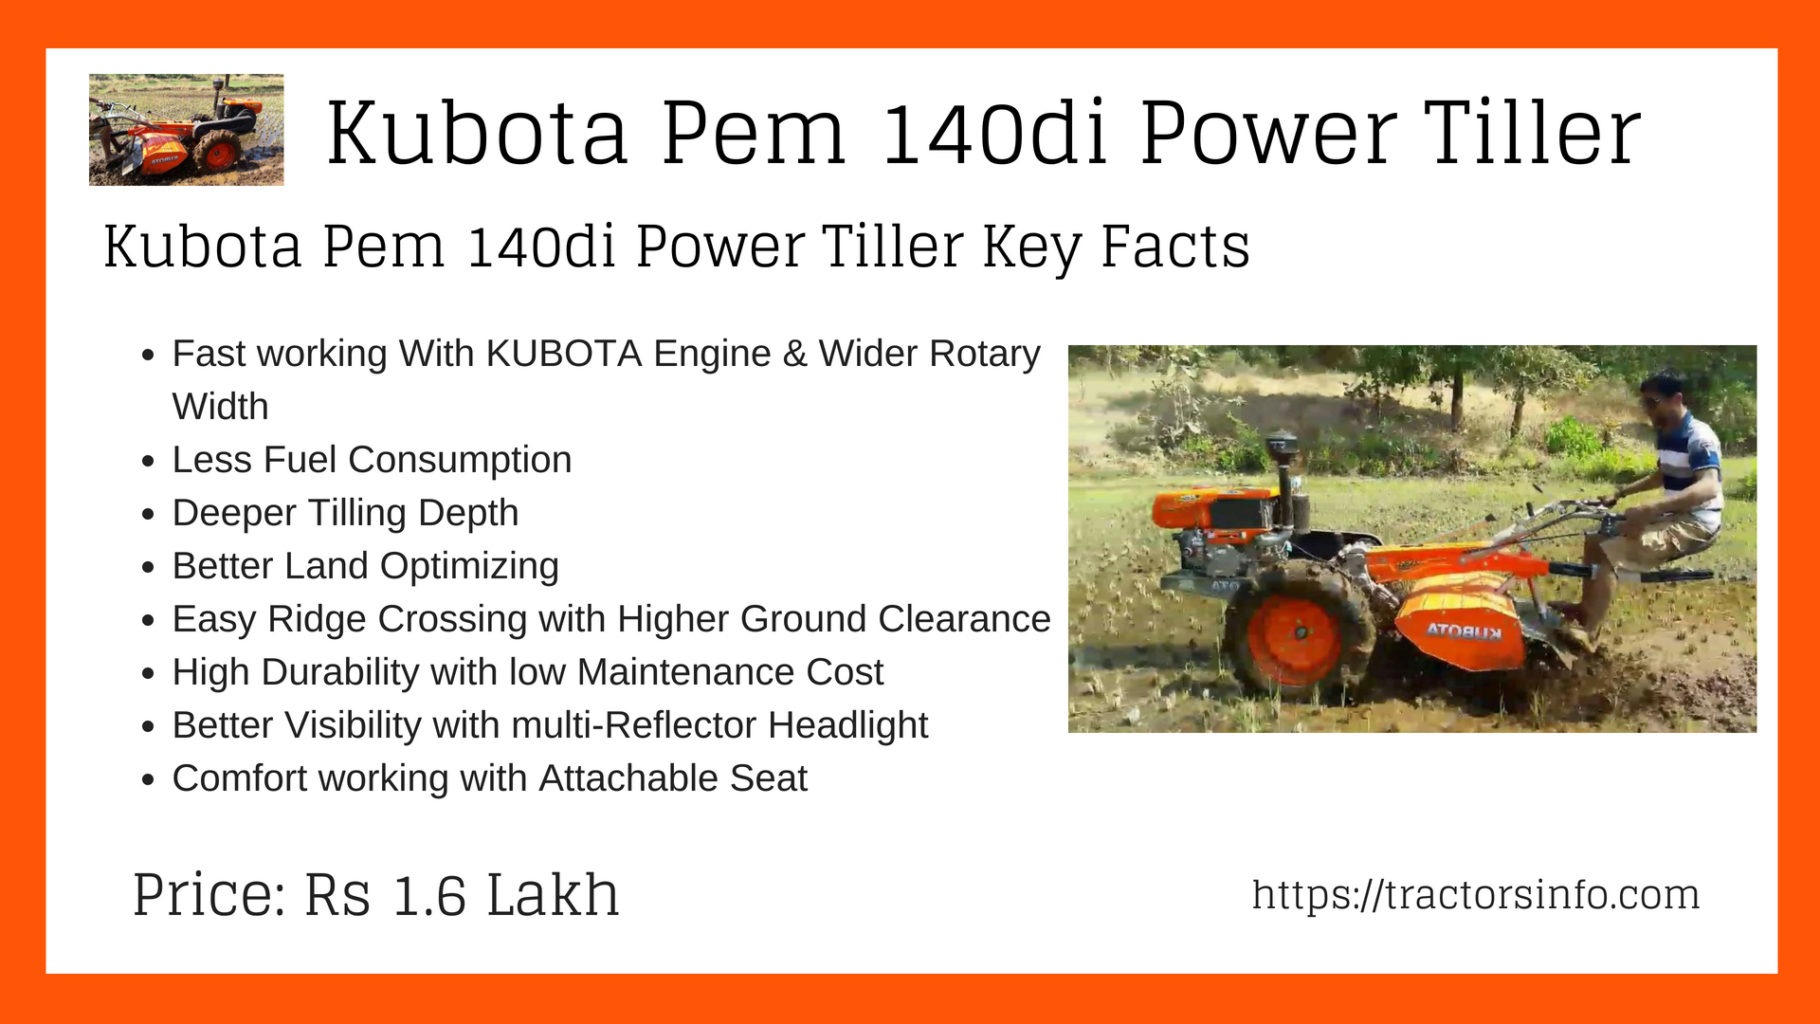 Kubota Pem 140di Power Tiller